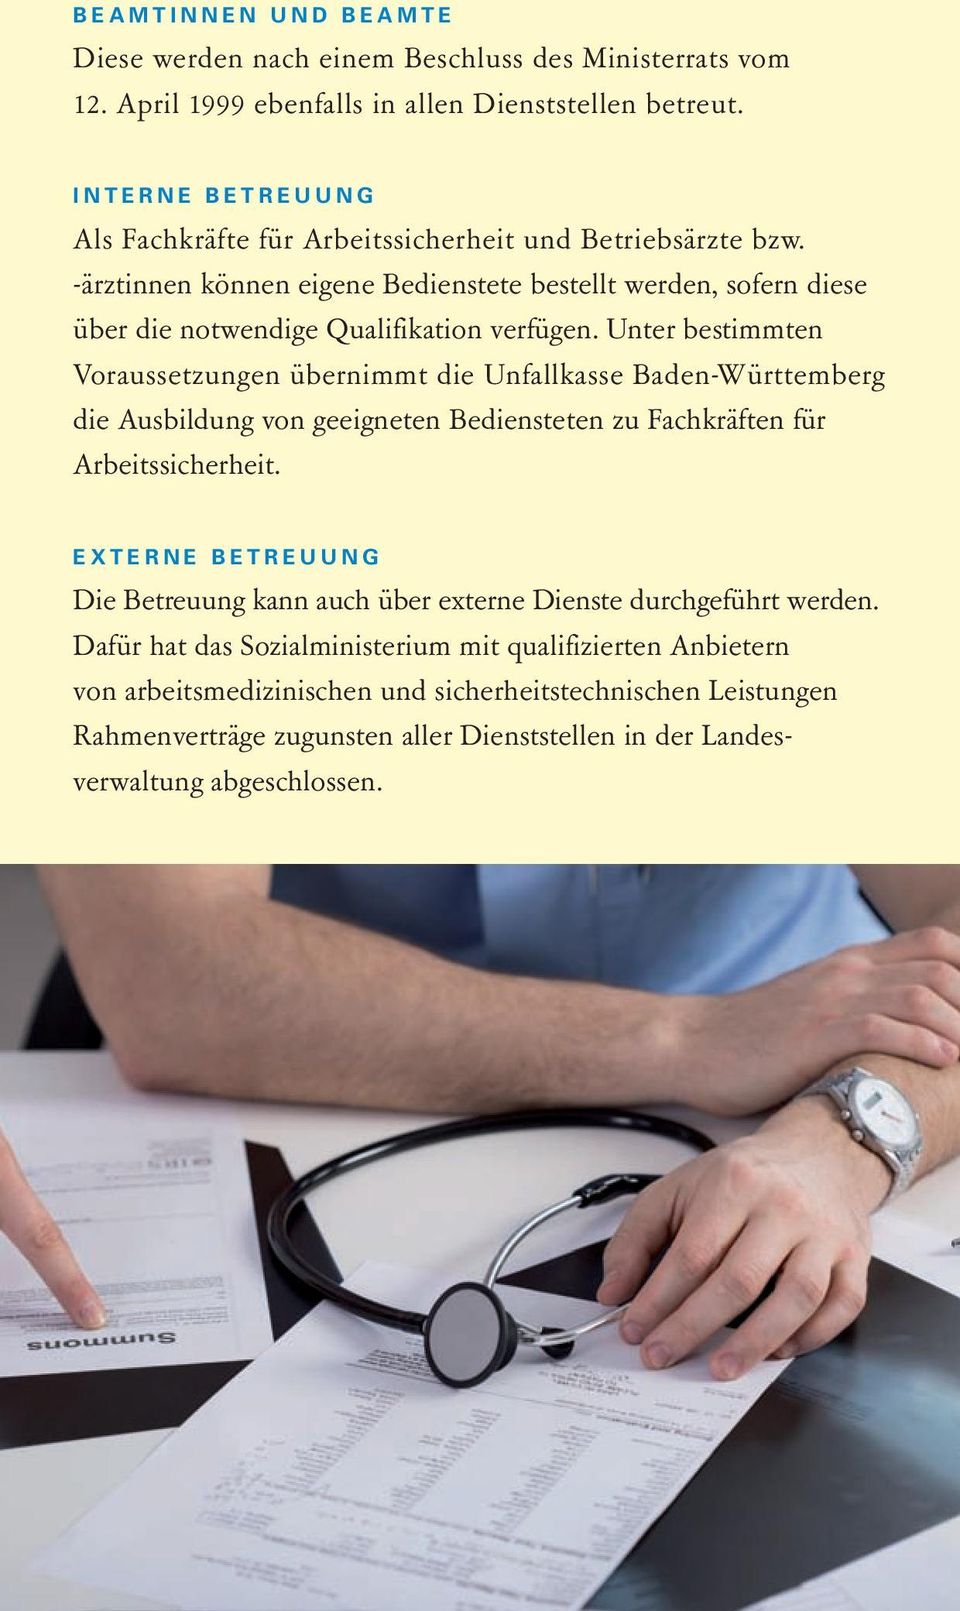 Unter bestimmten Voraussetzungen übernimmt die Unfallkasse Baden-Württemberg die Ausbildung von geeigneten Bediensteten zu Fachkräften für Arbeitssicherheit.